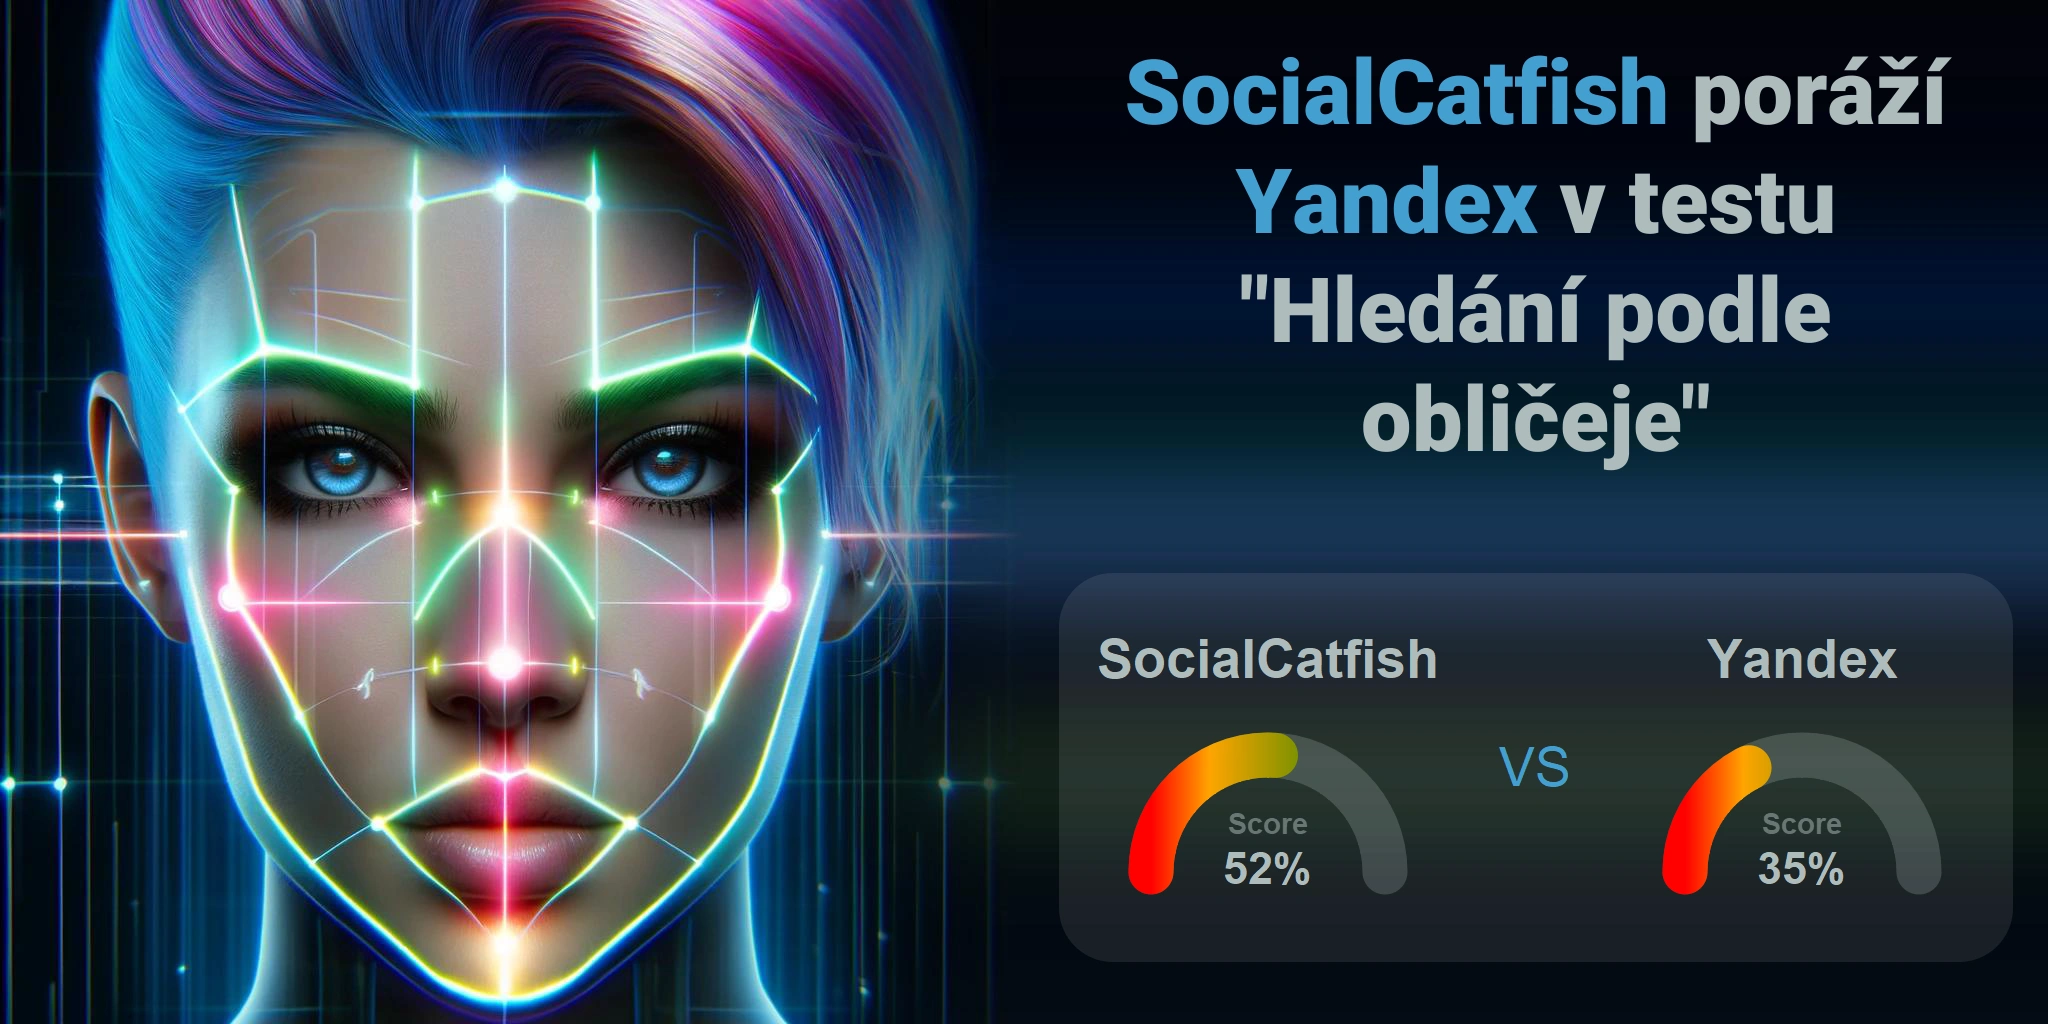 Který je lepší pro vyhledávání obličejů: <br>SocialCatfish nebo Yandex?